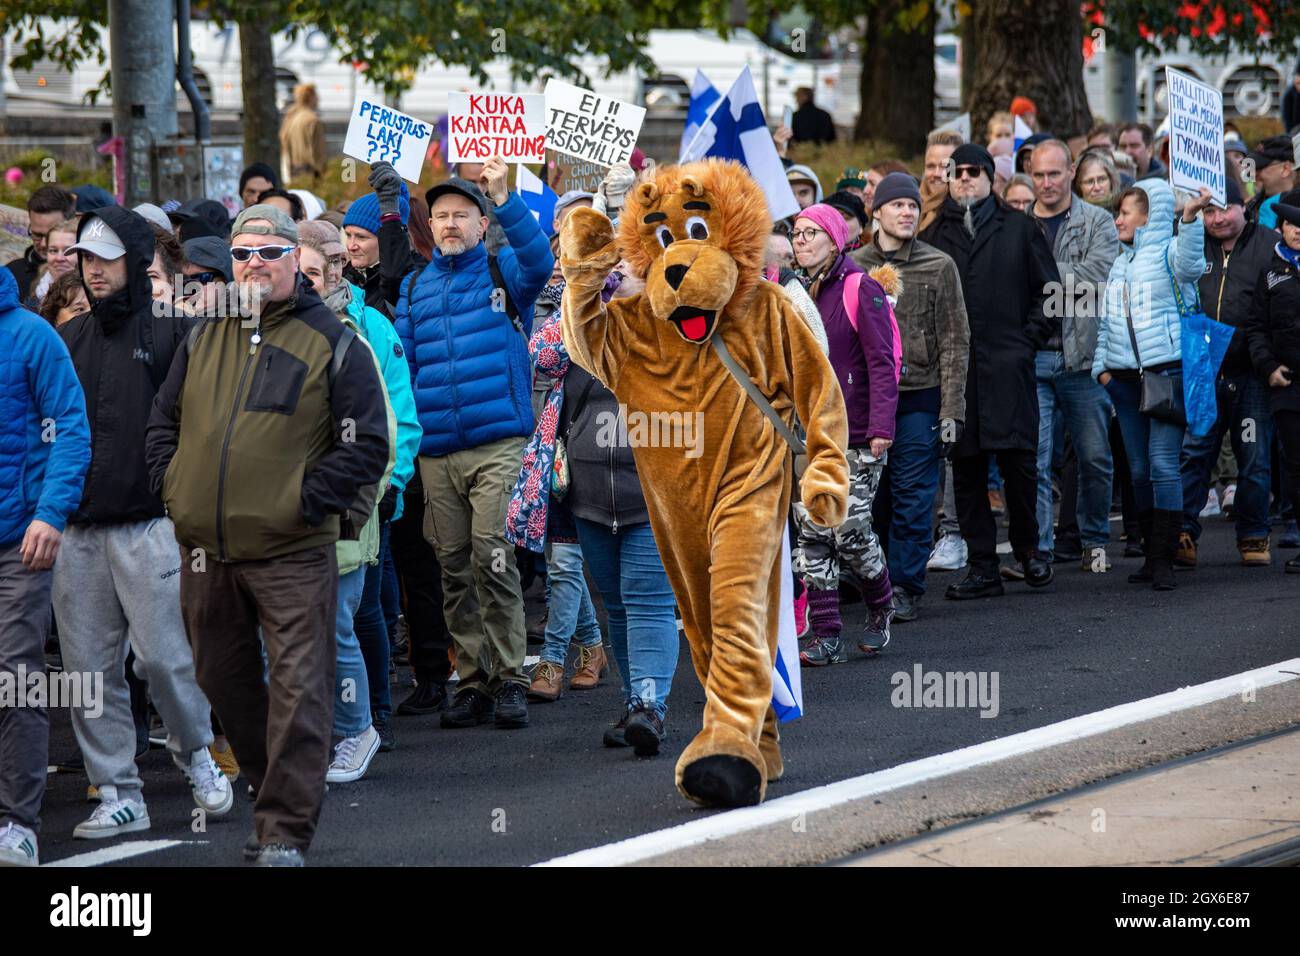 Mascota de león marchando con manifestantes contra la vacuna contra el coronavirus en Helsinki, Finlandia Foto de stock